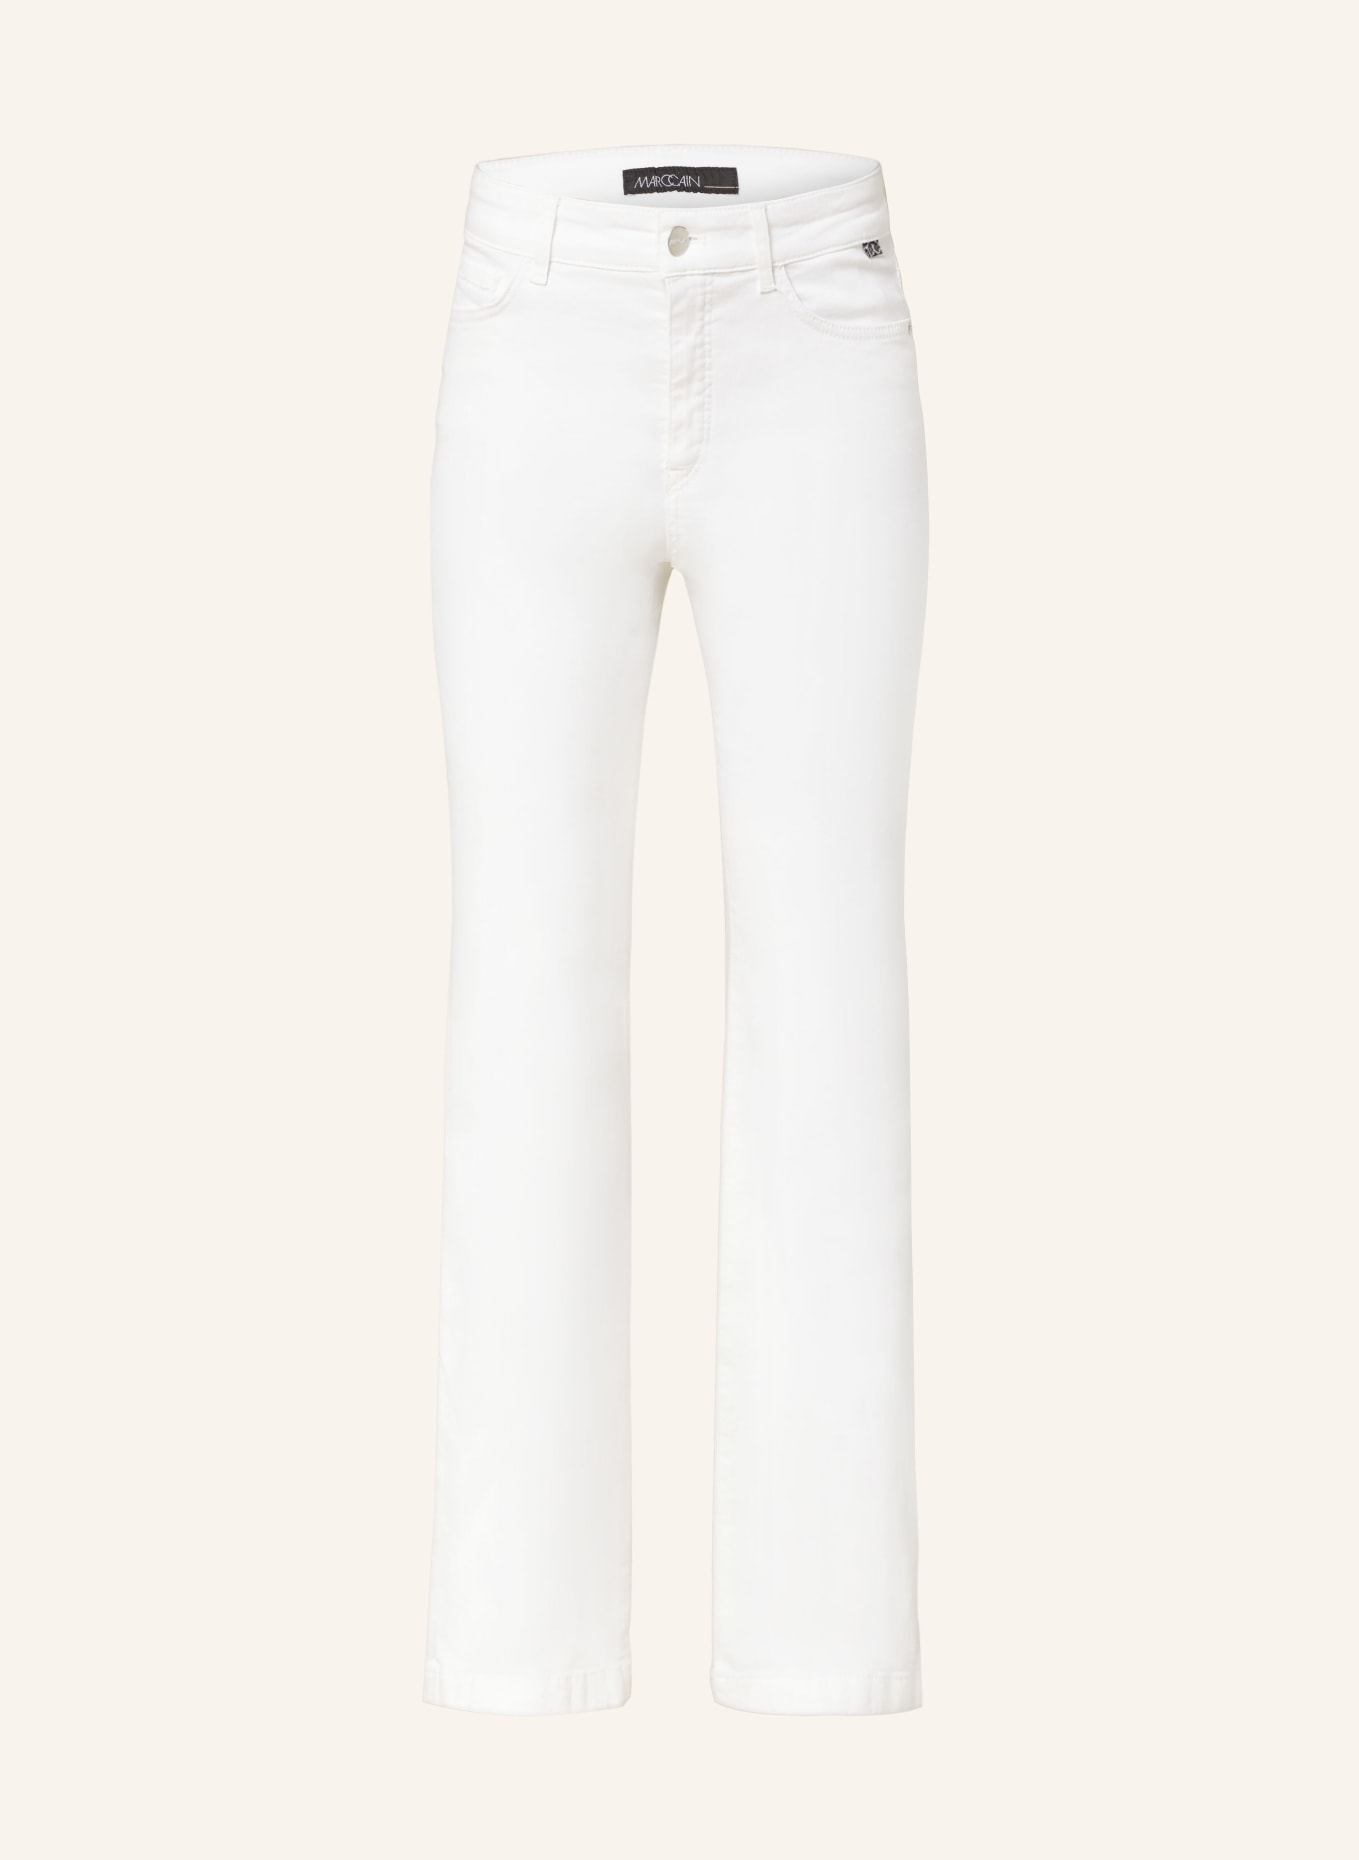 MARC CAIN Flared Jeans FARO, Farbe: 100 WHITE (Bild 1)